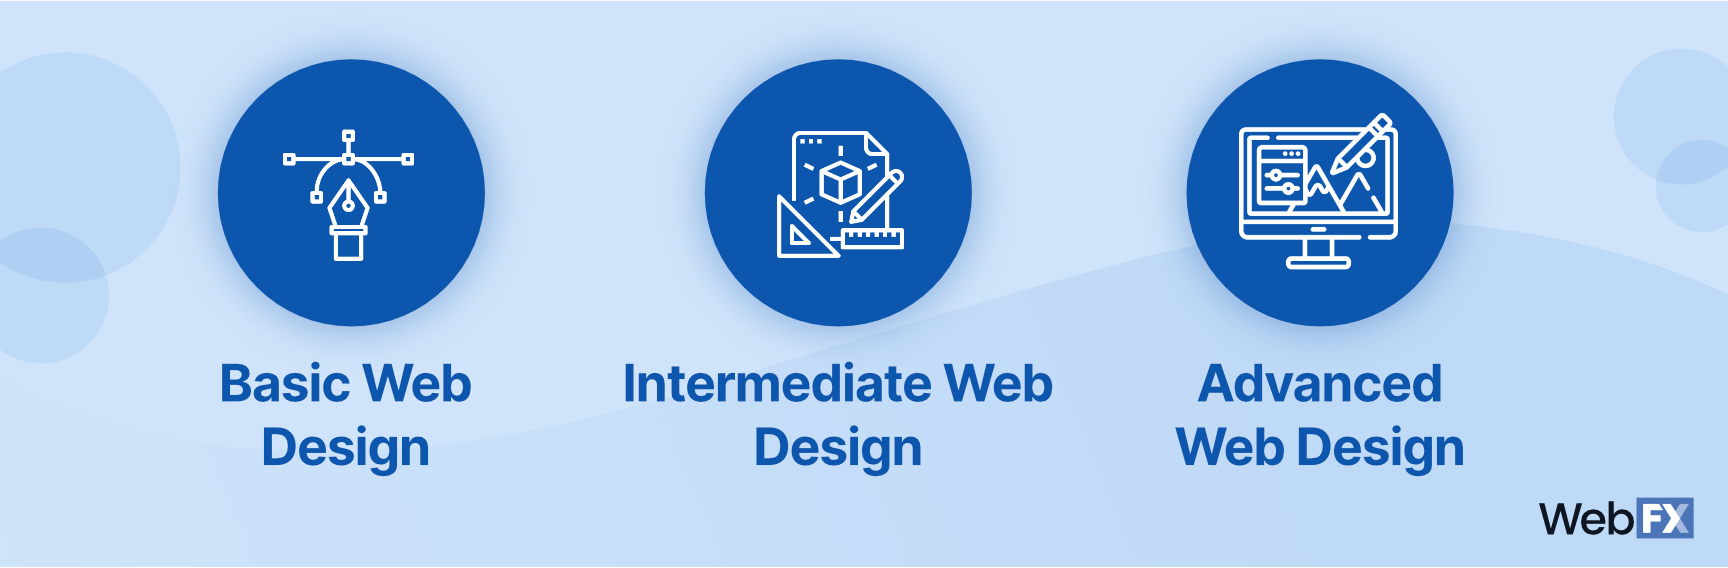 网页设计服务的类型或层次图形